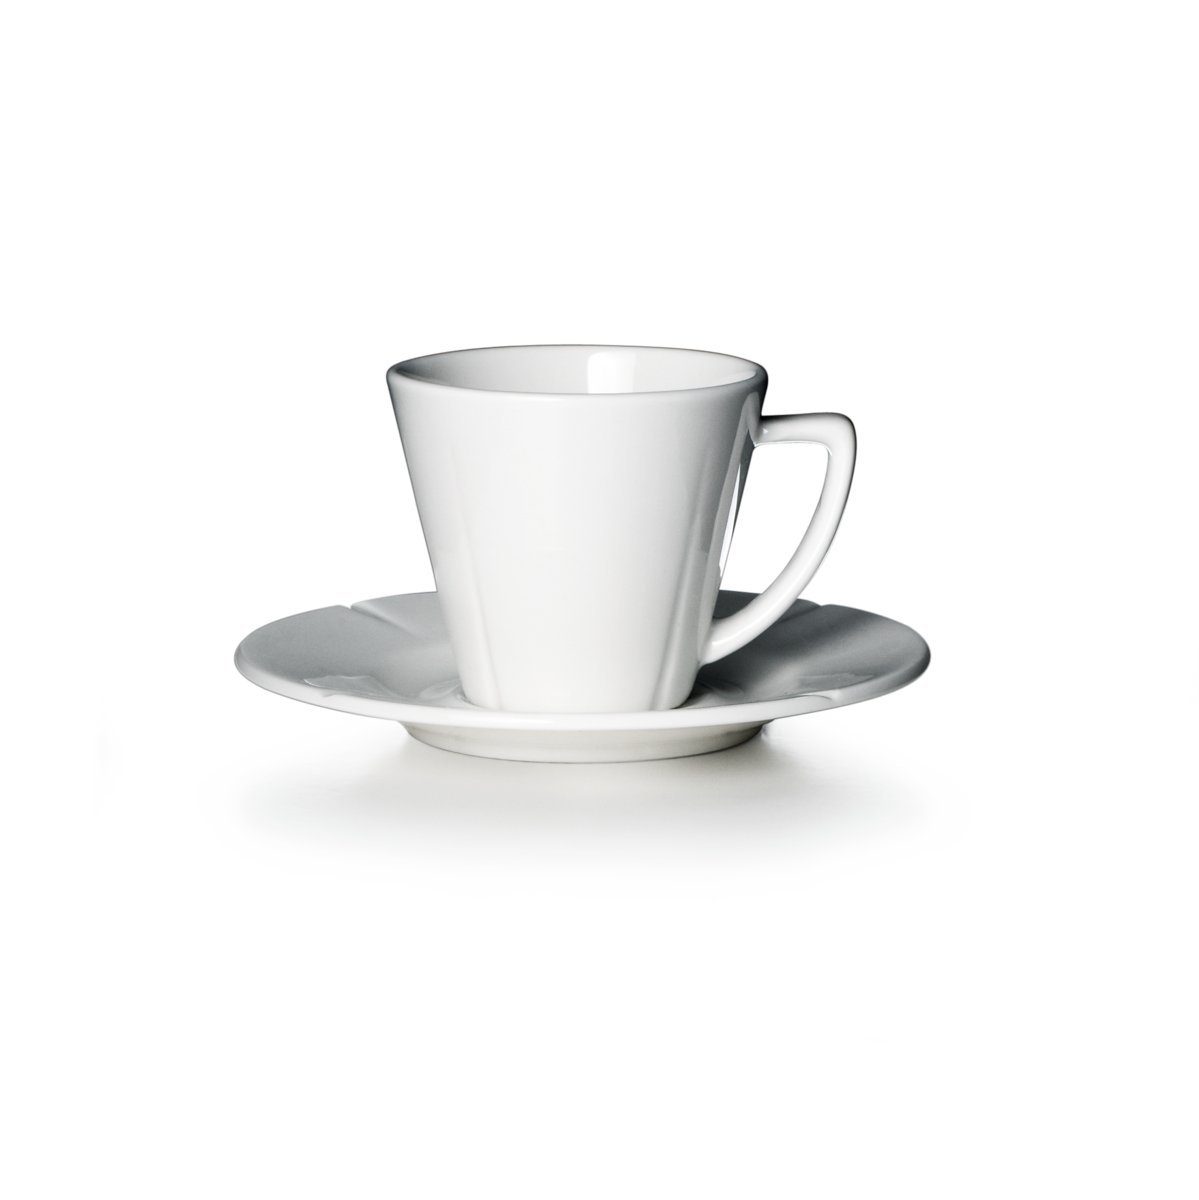 Rosendahl Espressotasse Grand Cru; Klassische Espressotasse mit passender Untertasse aus weißem Porzellan, Porzellan